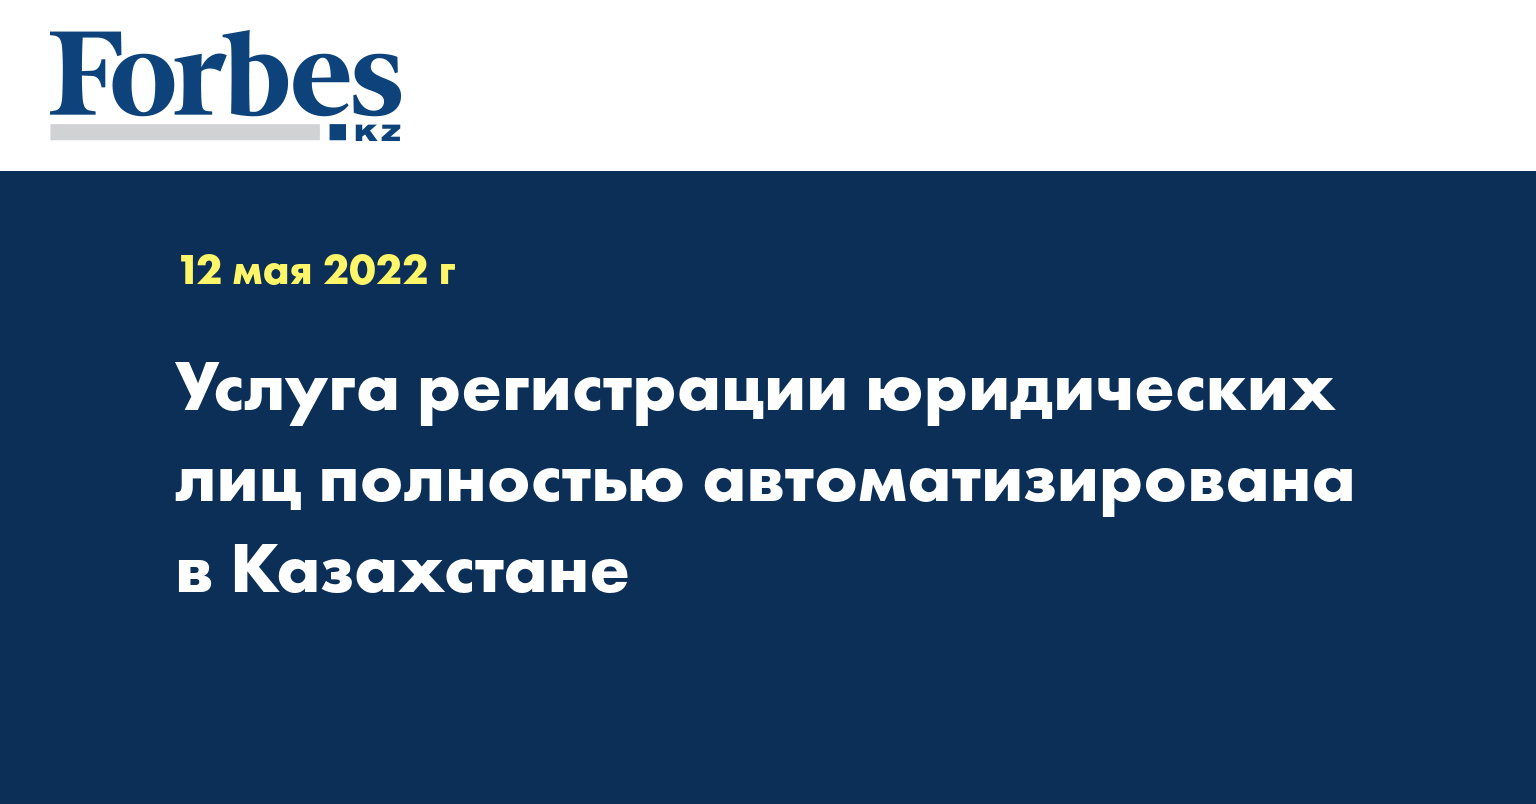 Услуга регистрации юридических лиц полностью автоматизирована в Казахстане